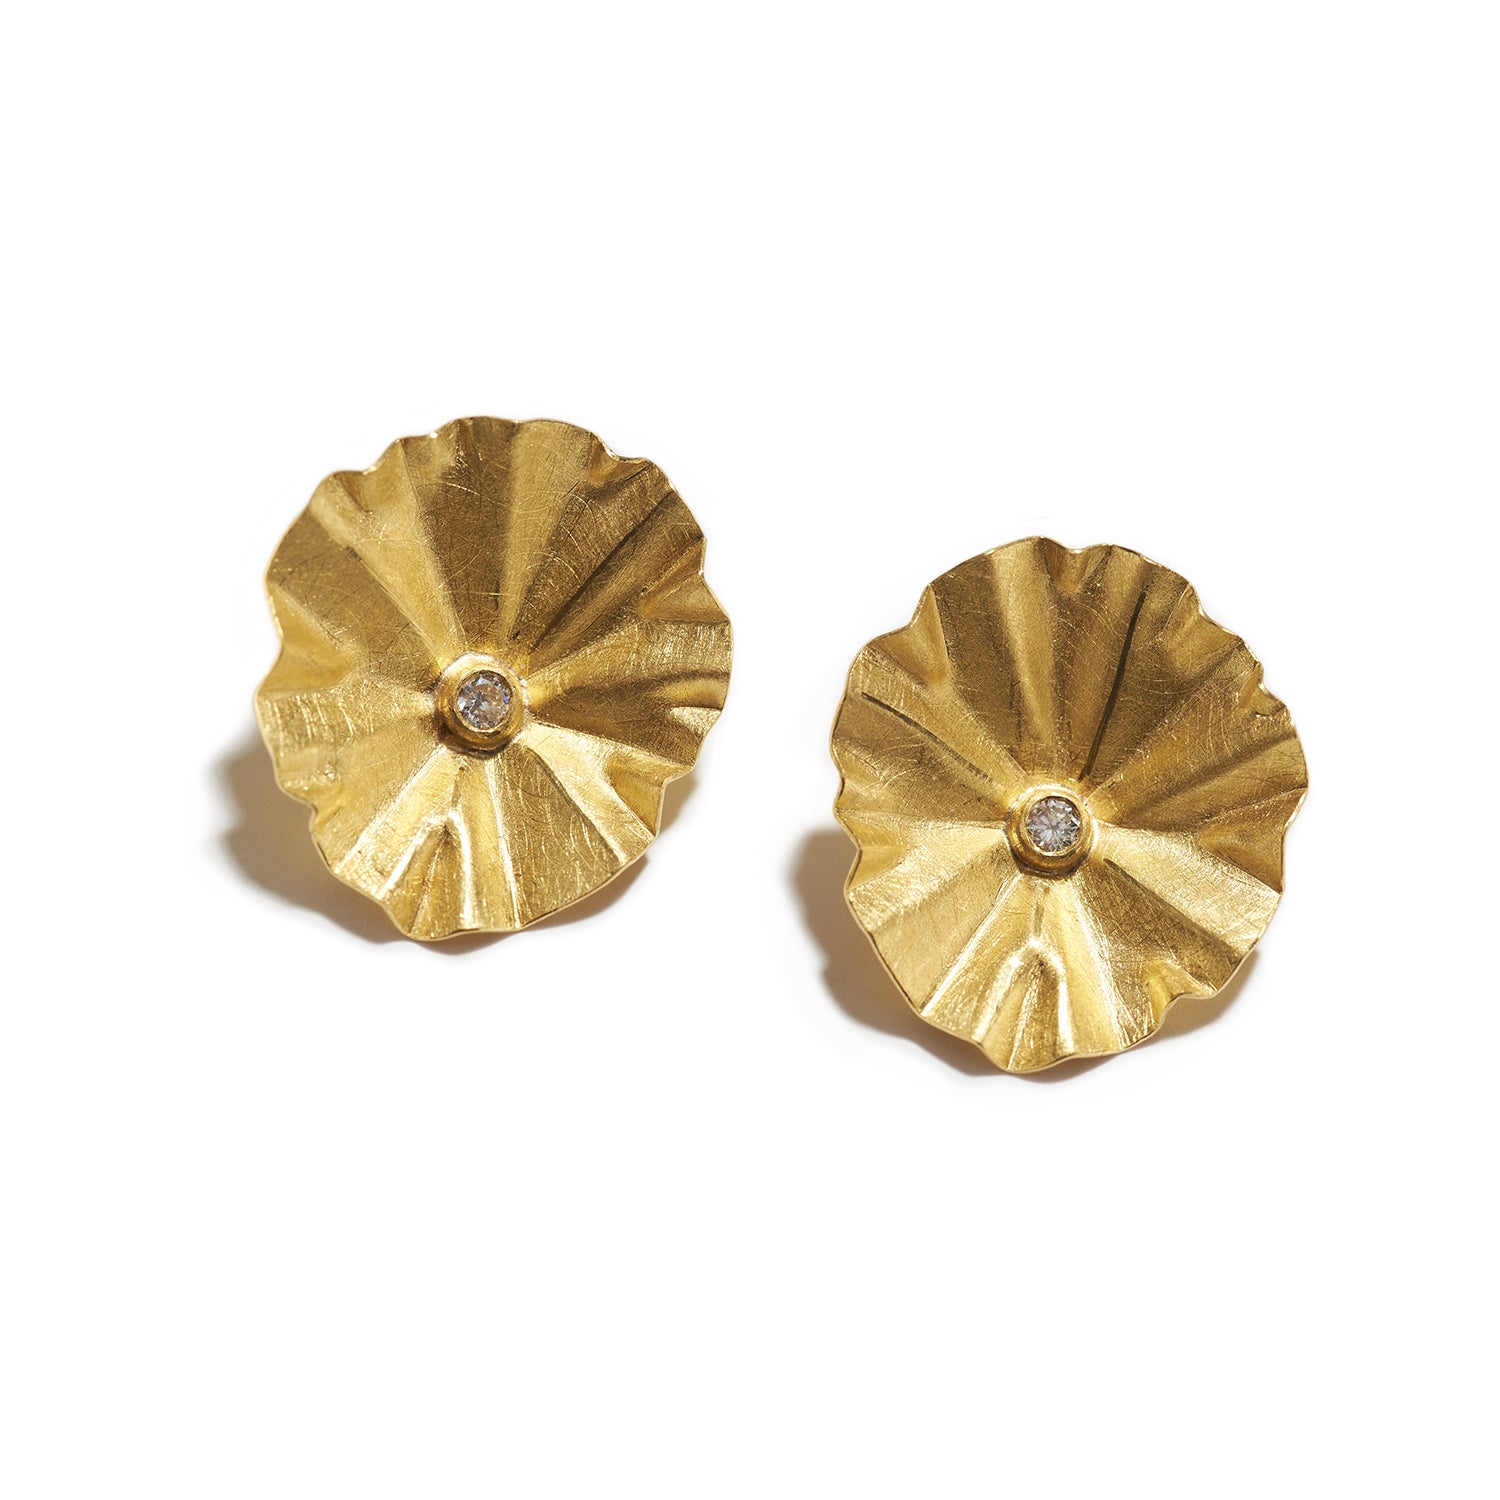 Lotus Diamond Stud Earrings